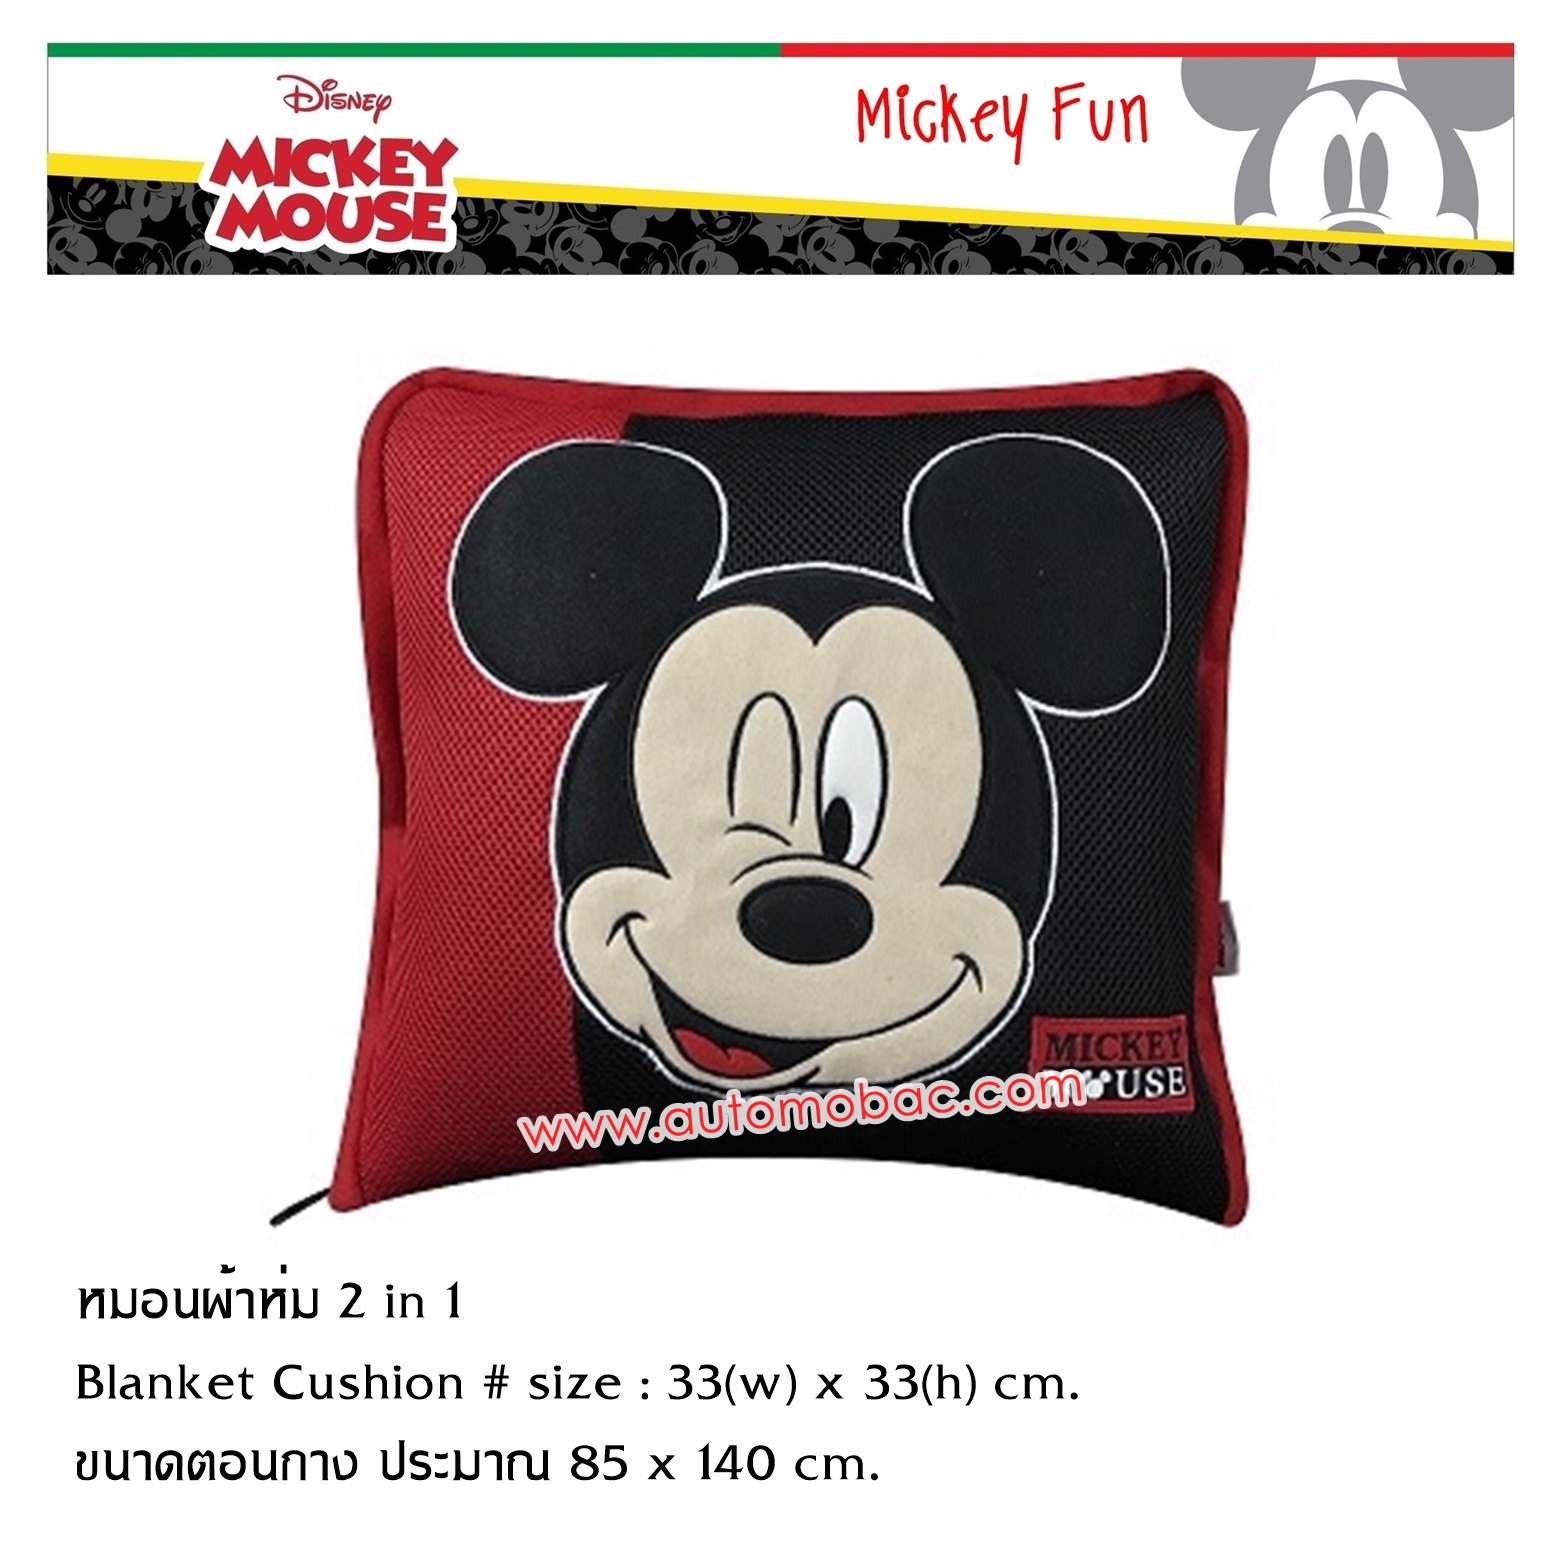 Mickey Mouse FUN หมอนผ้าห่ม 2 in 1 เมื่อกางออกมาใช้เป็นผ้าห่มได้ ใช้ได้ทั้งในบ้านและในรถ งานแท้